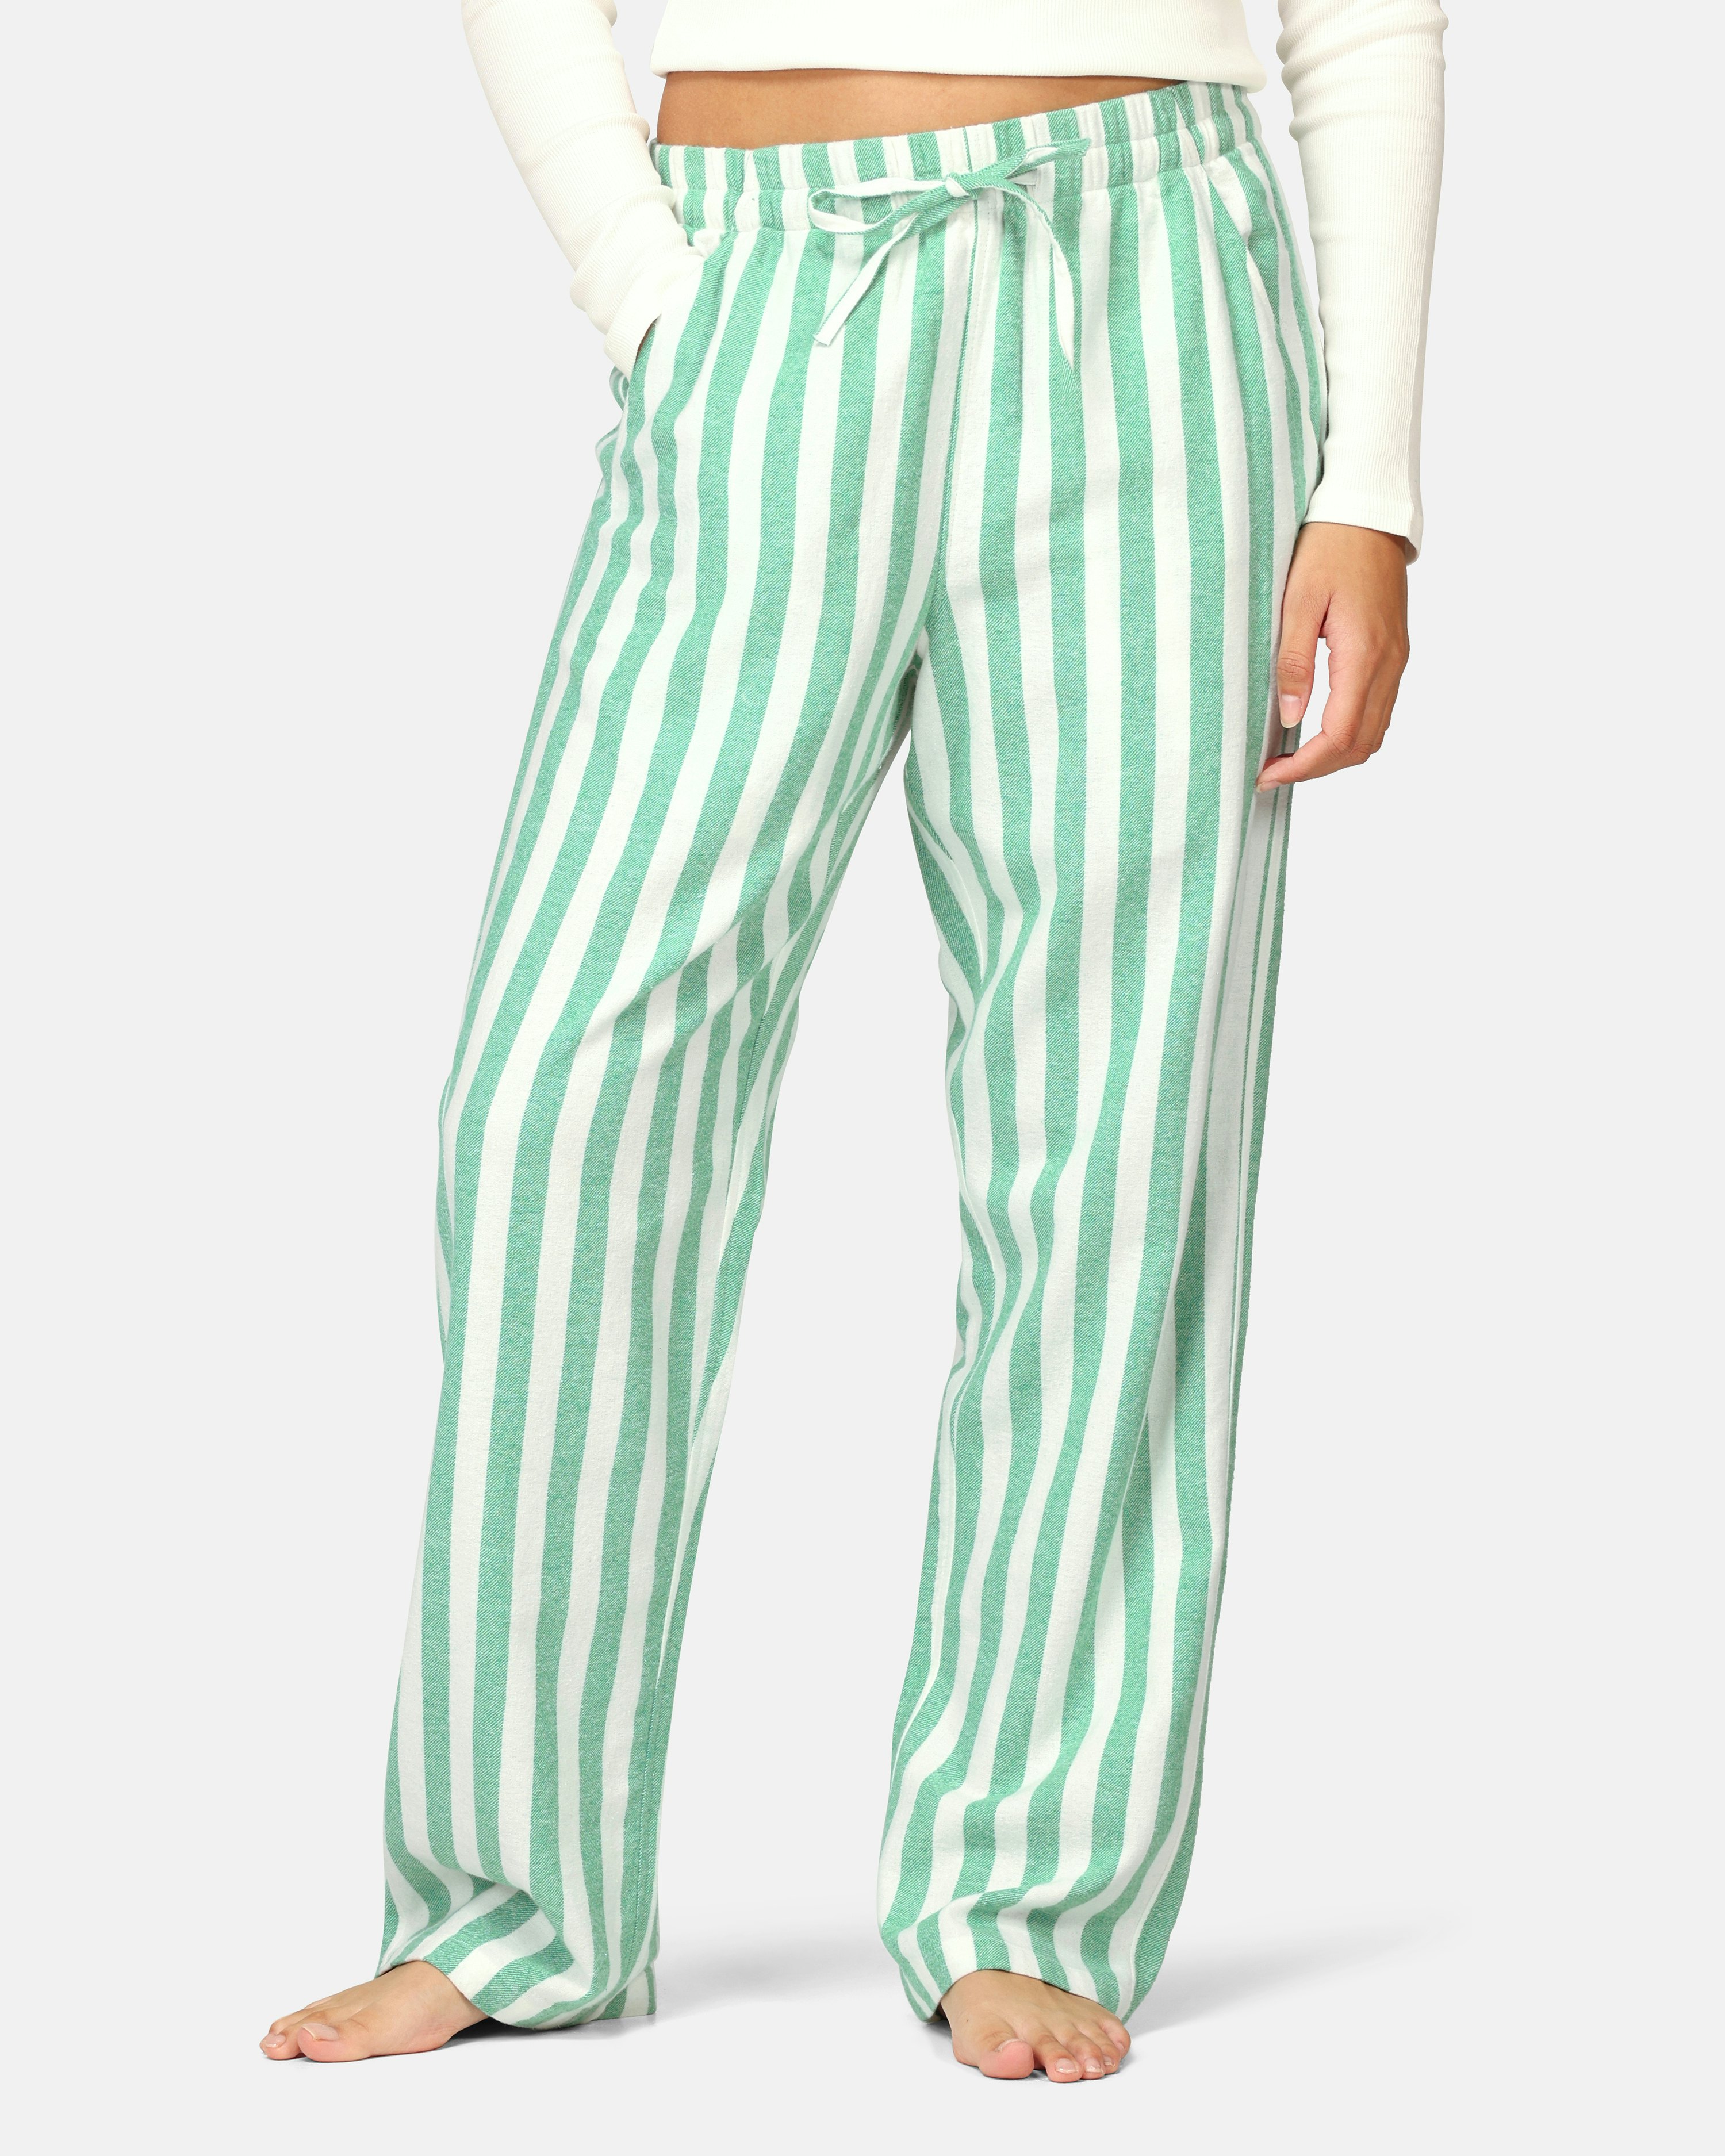 JUNKYARD Yes Pyjamas Pants Green, Women